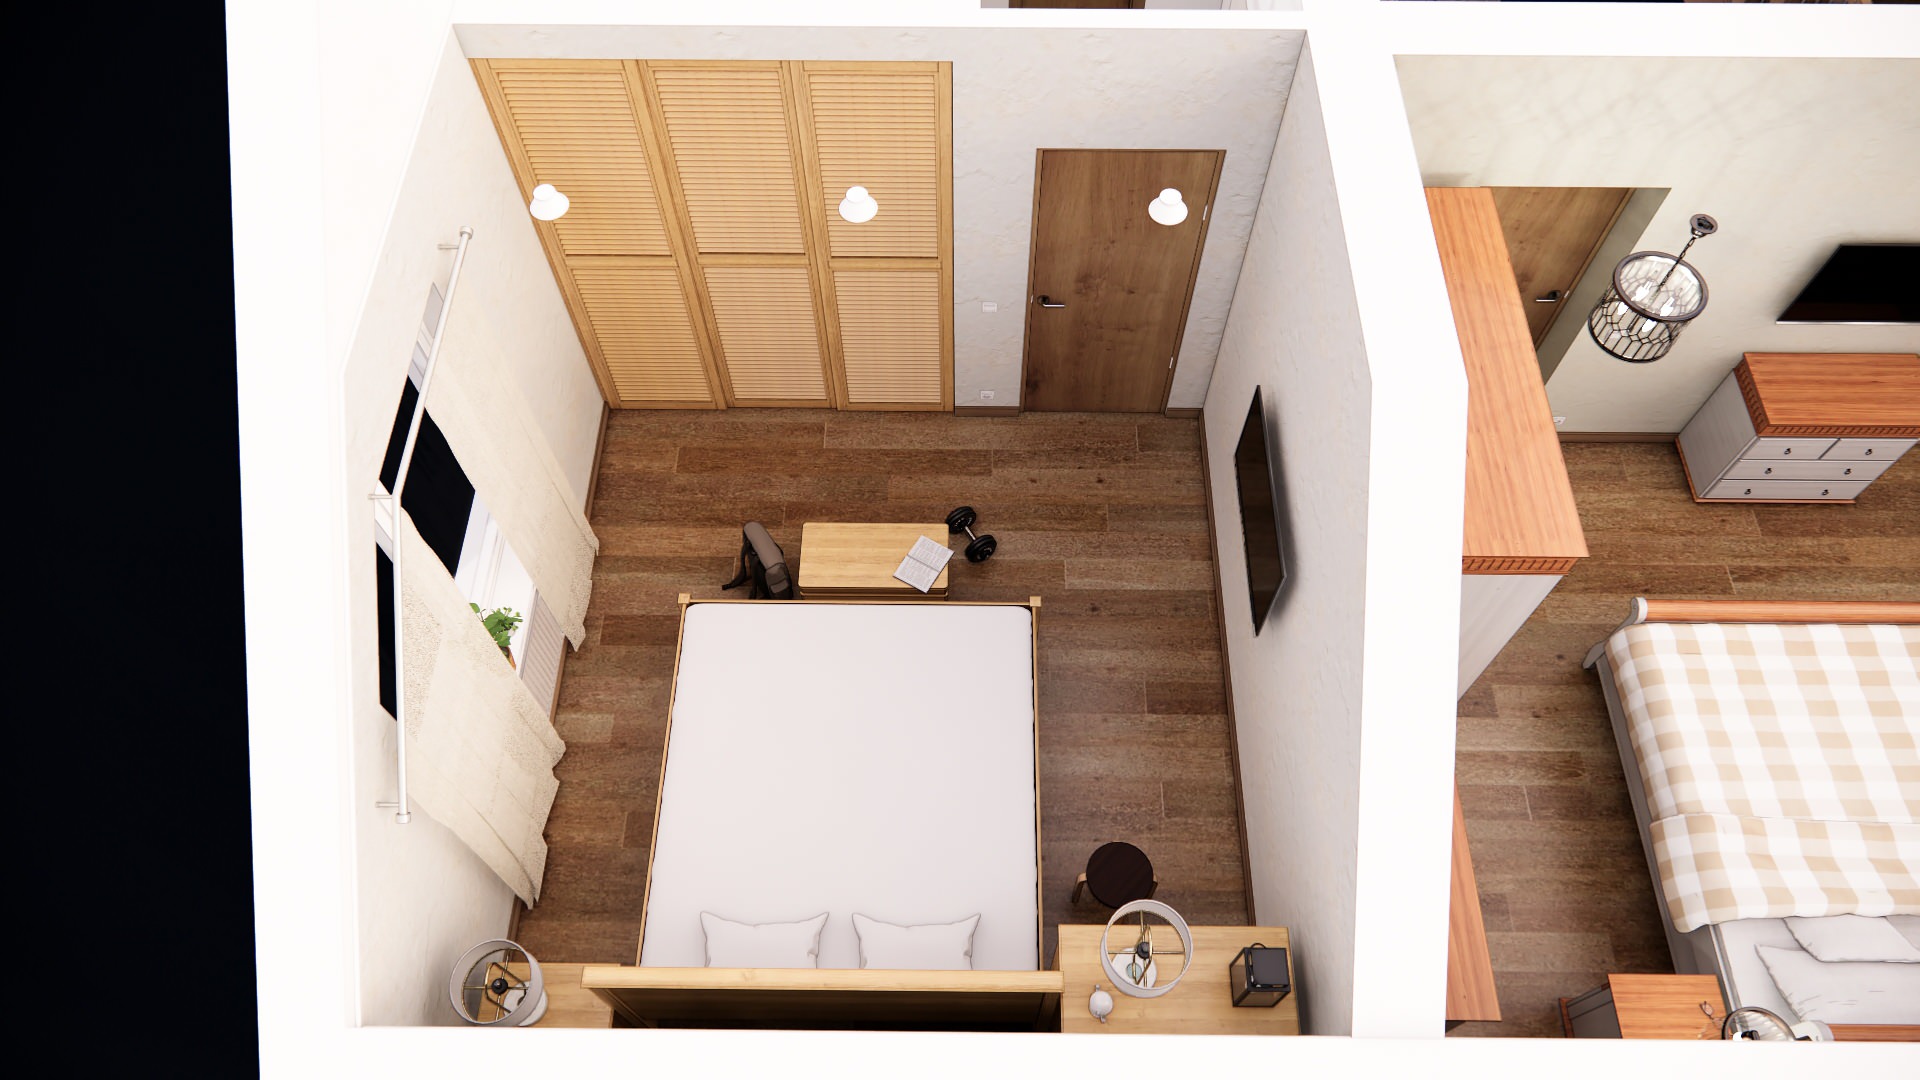 Интерьеры дома в немецком стиле: спальни и второй этаж обзорно